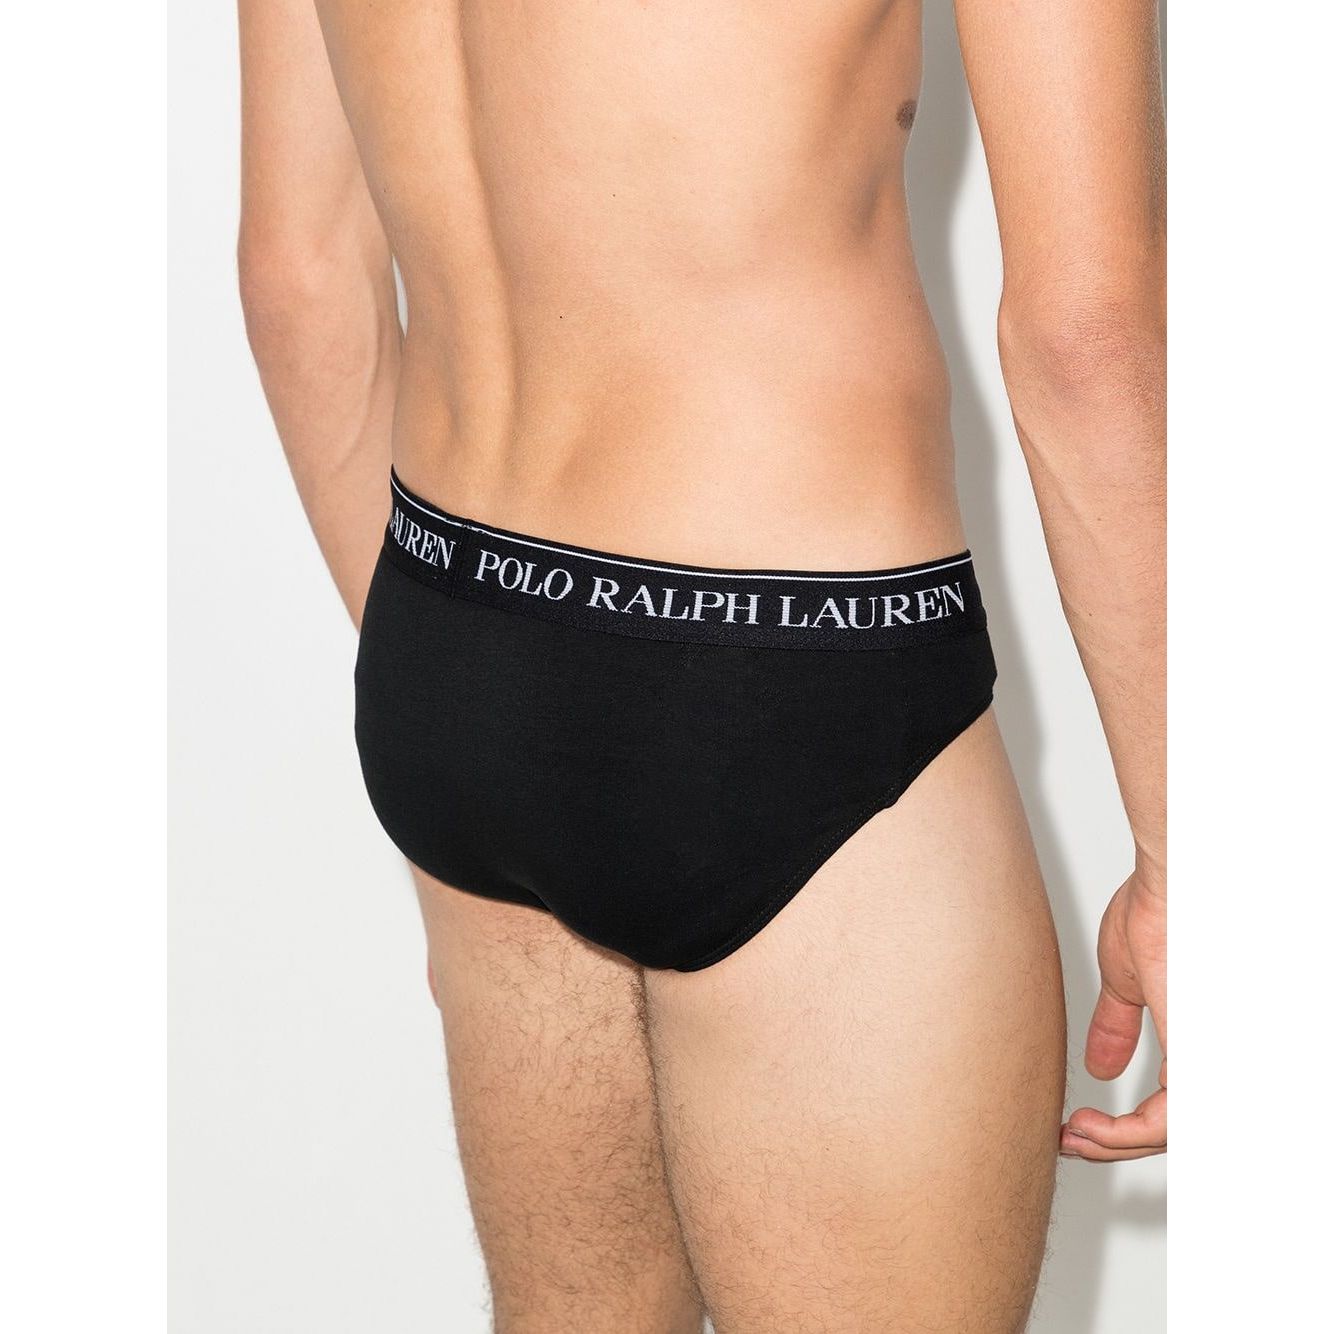 Polo Ralph Lauren pack of 3 logo waistband briefs - Yooto